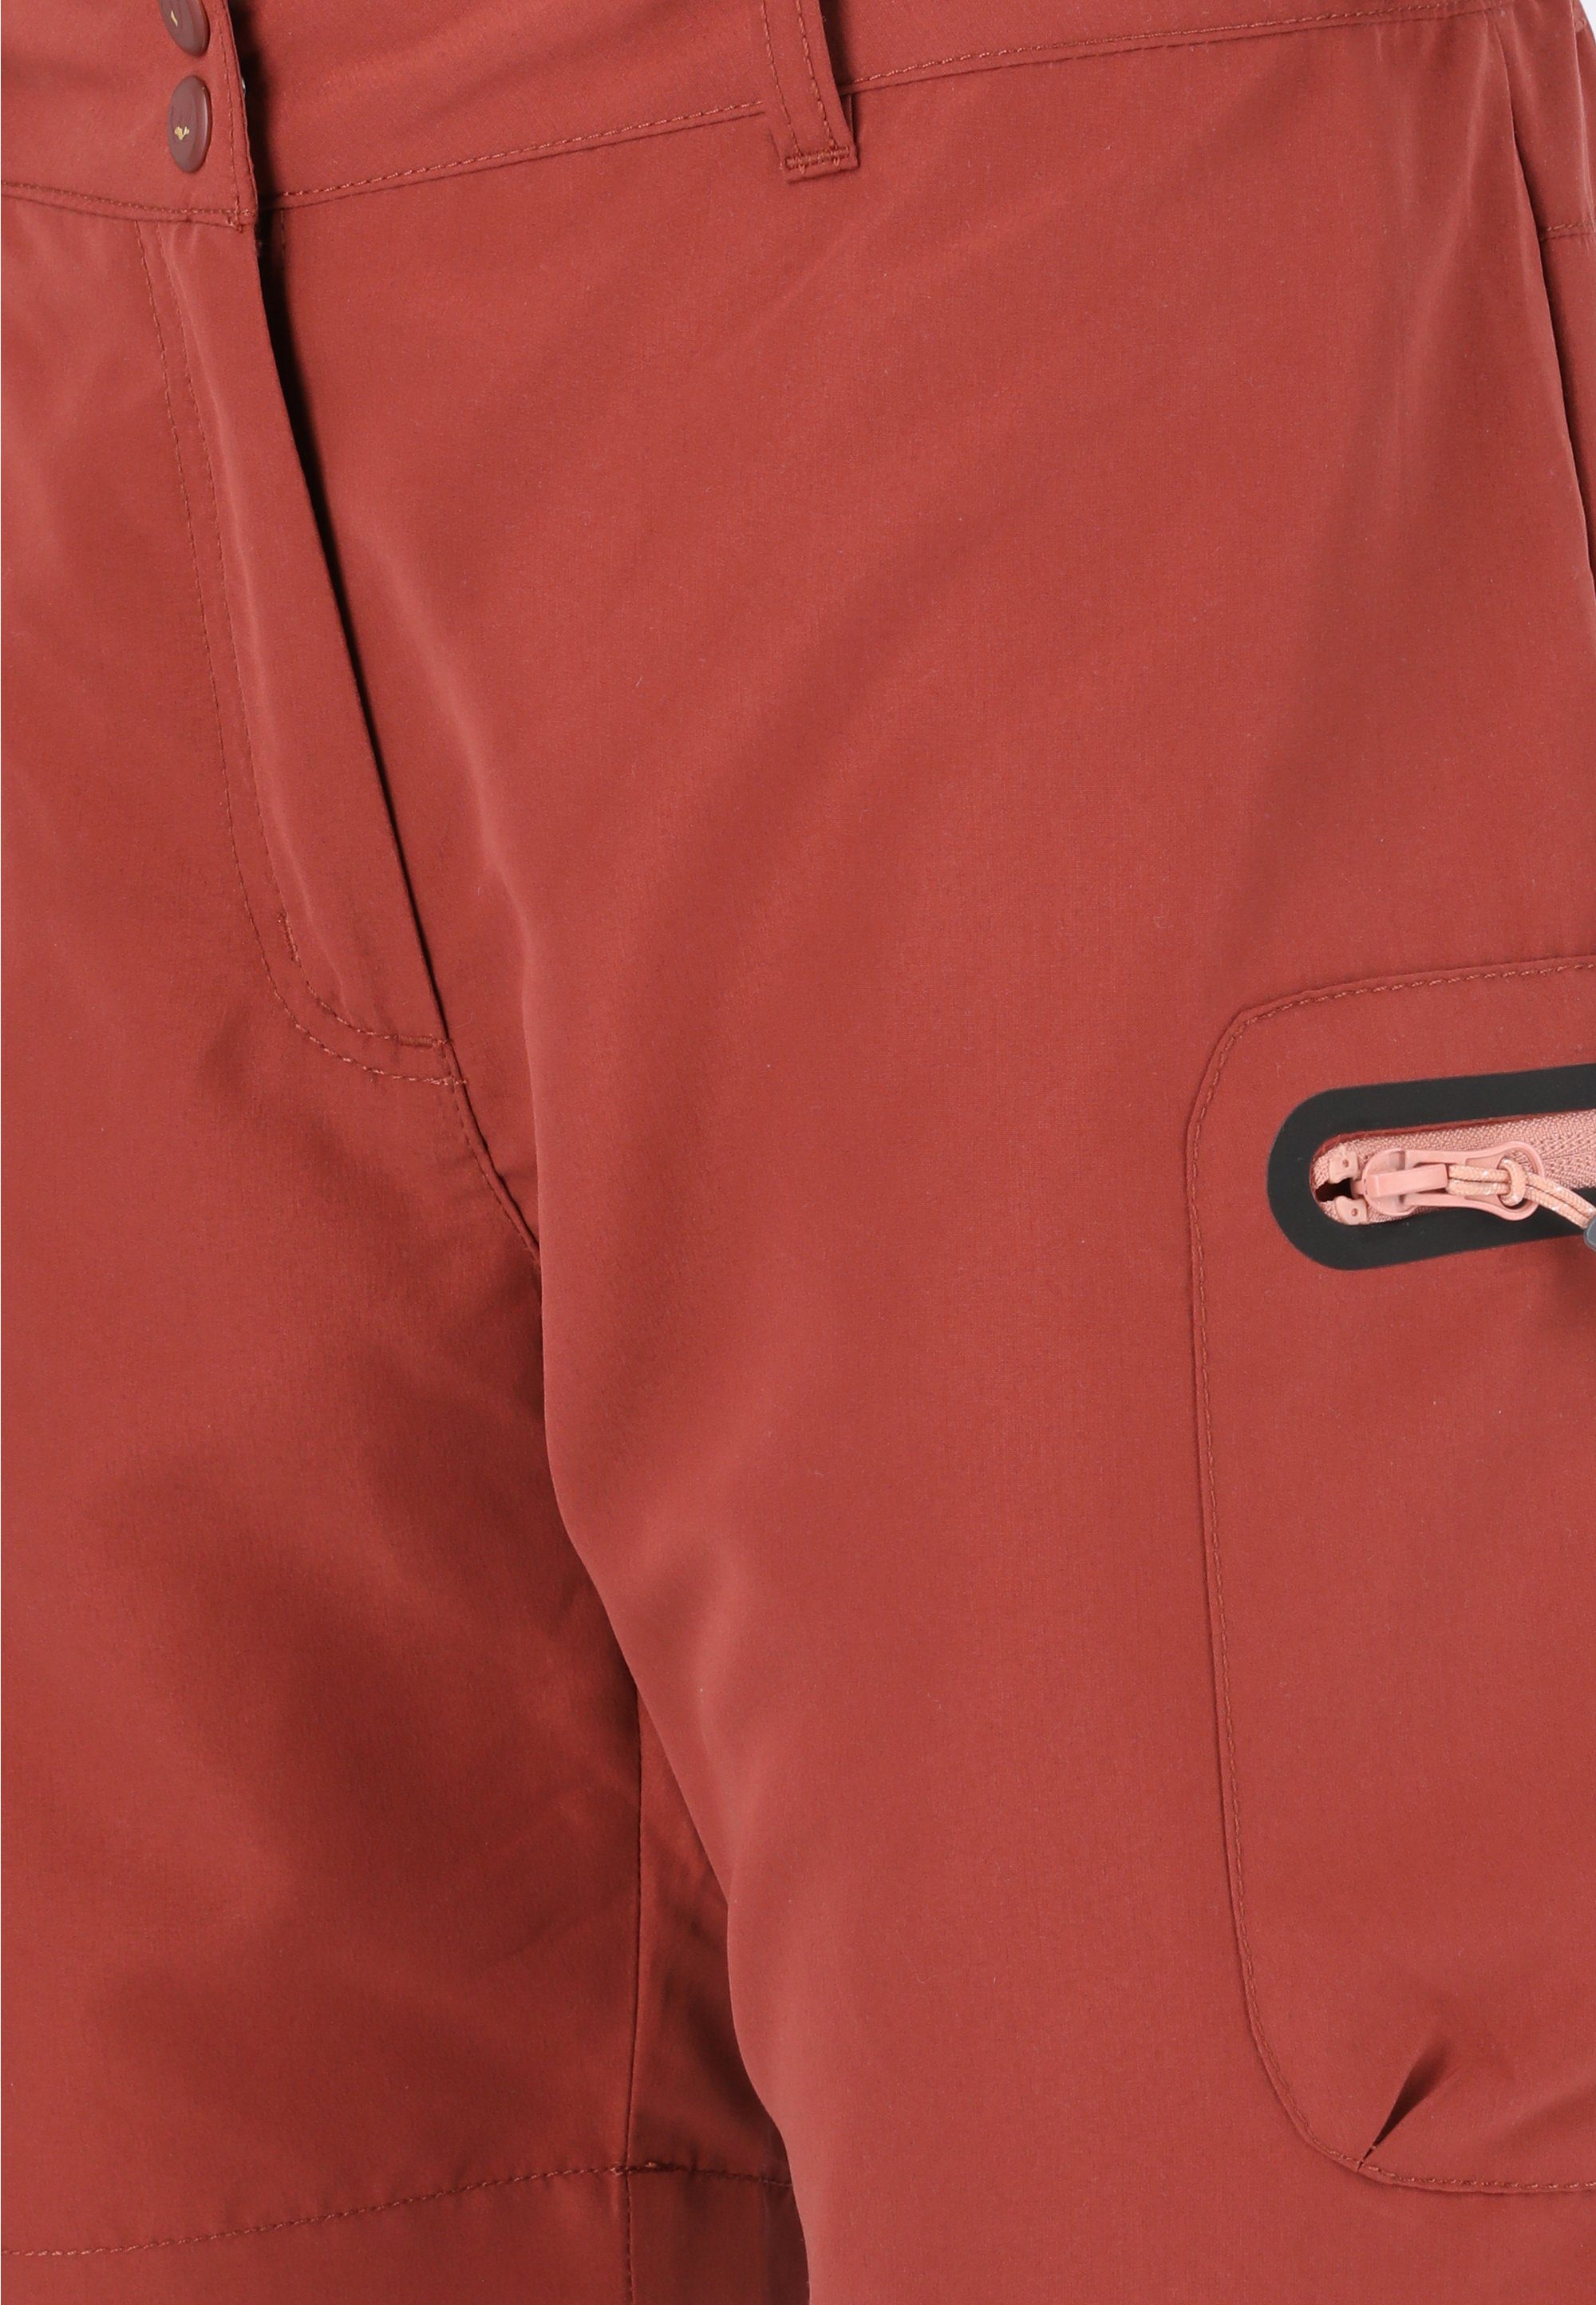 WHISTLER Stian Shorts maroon praktischen Reißverschlusstaschen mit